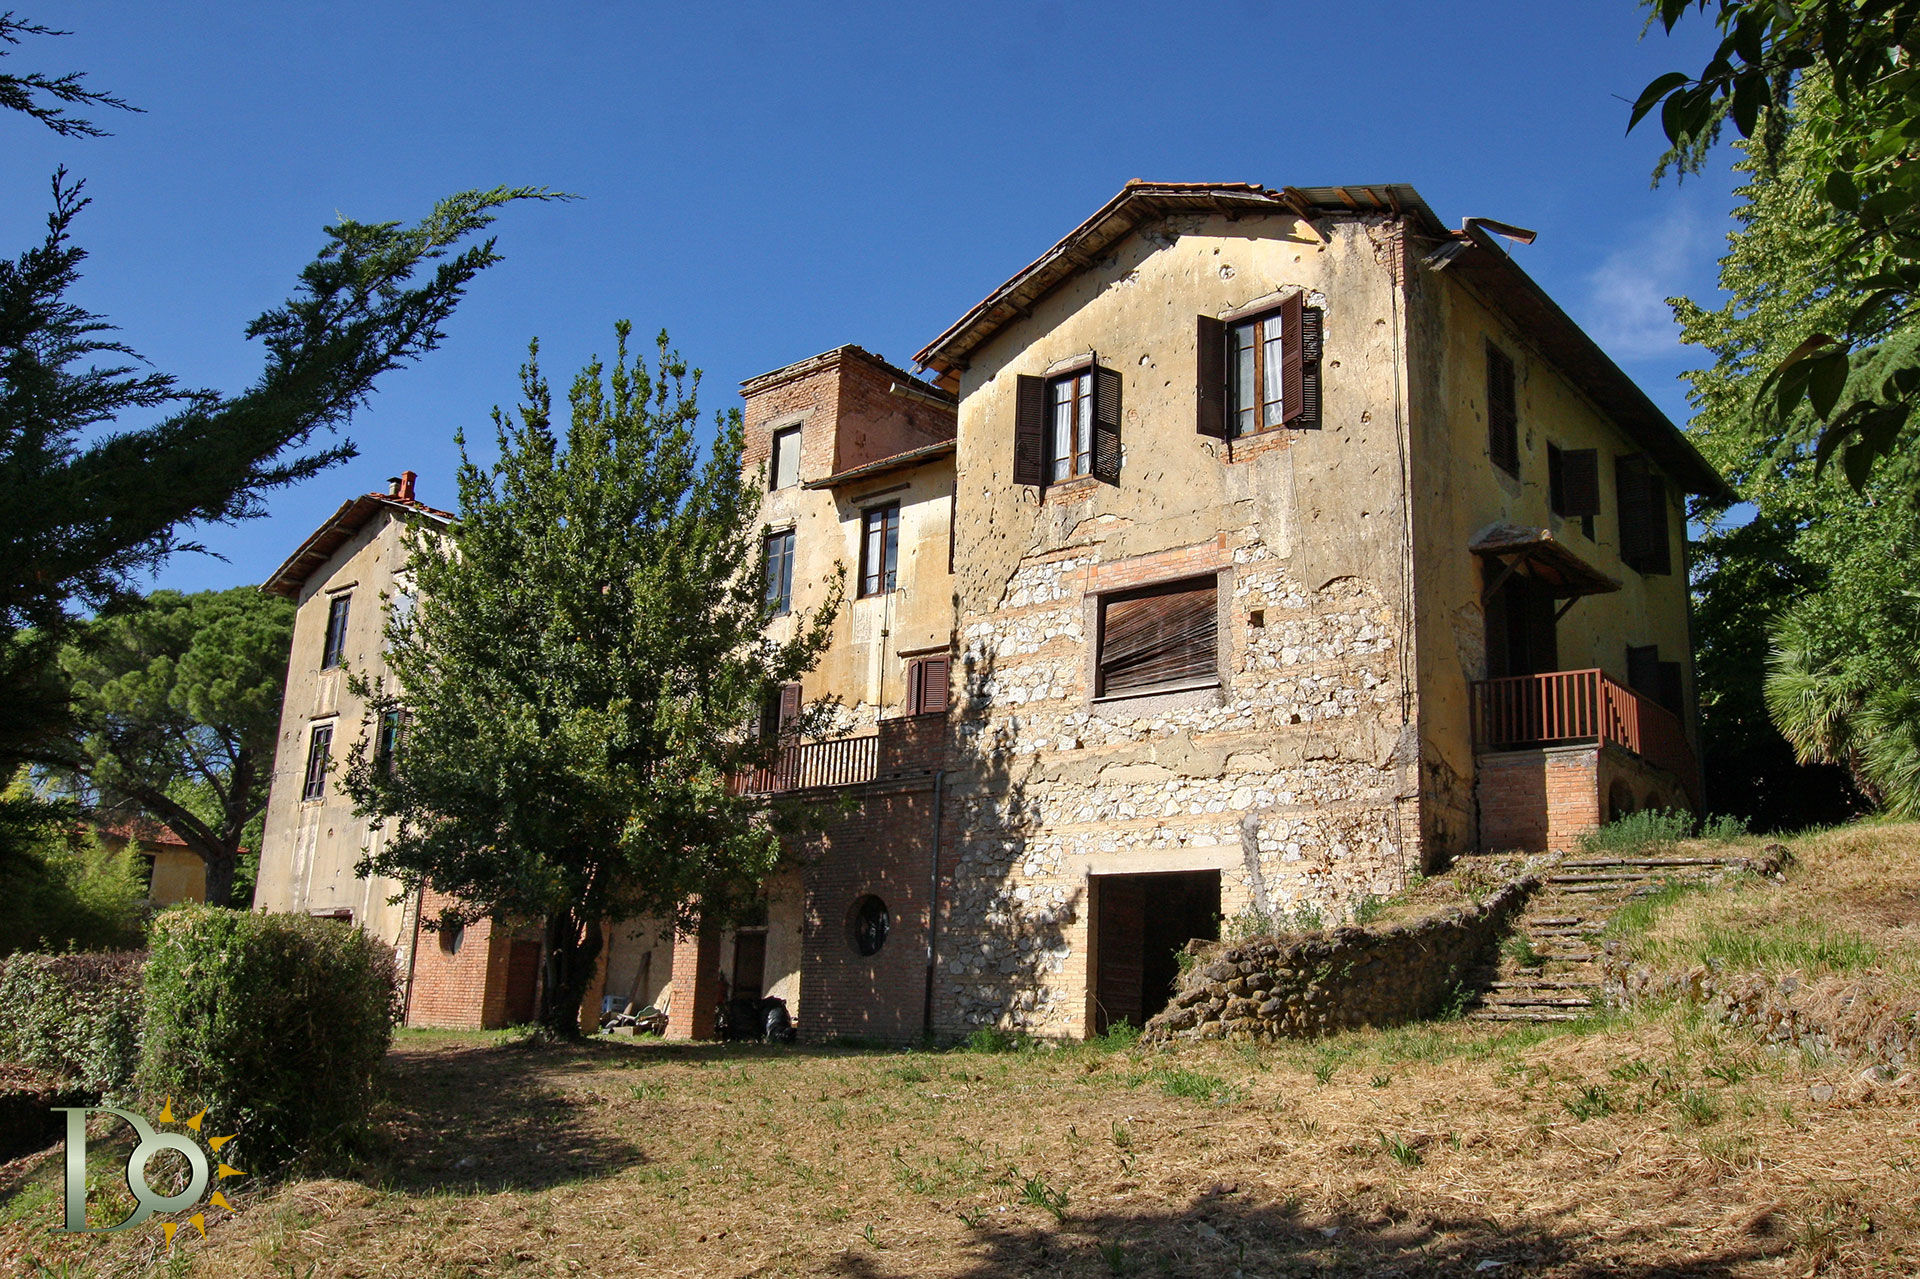 Villa Camuccini